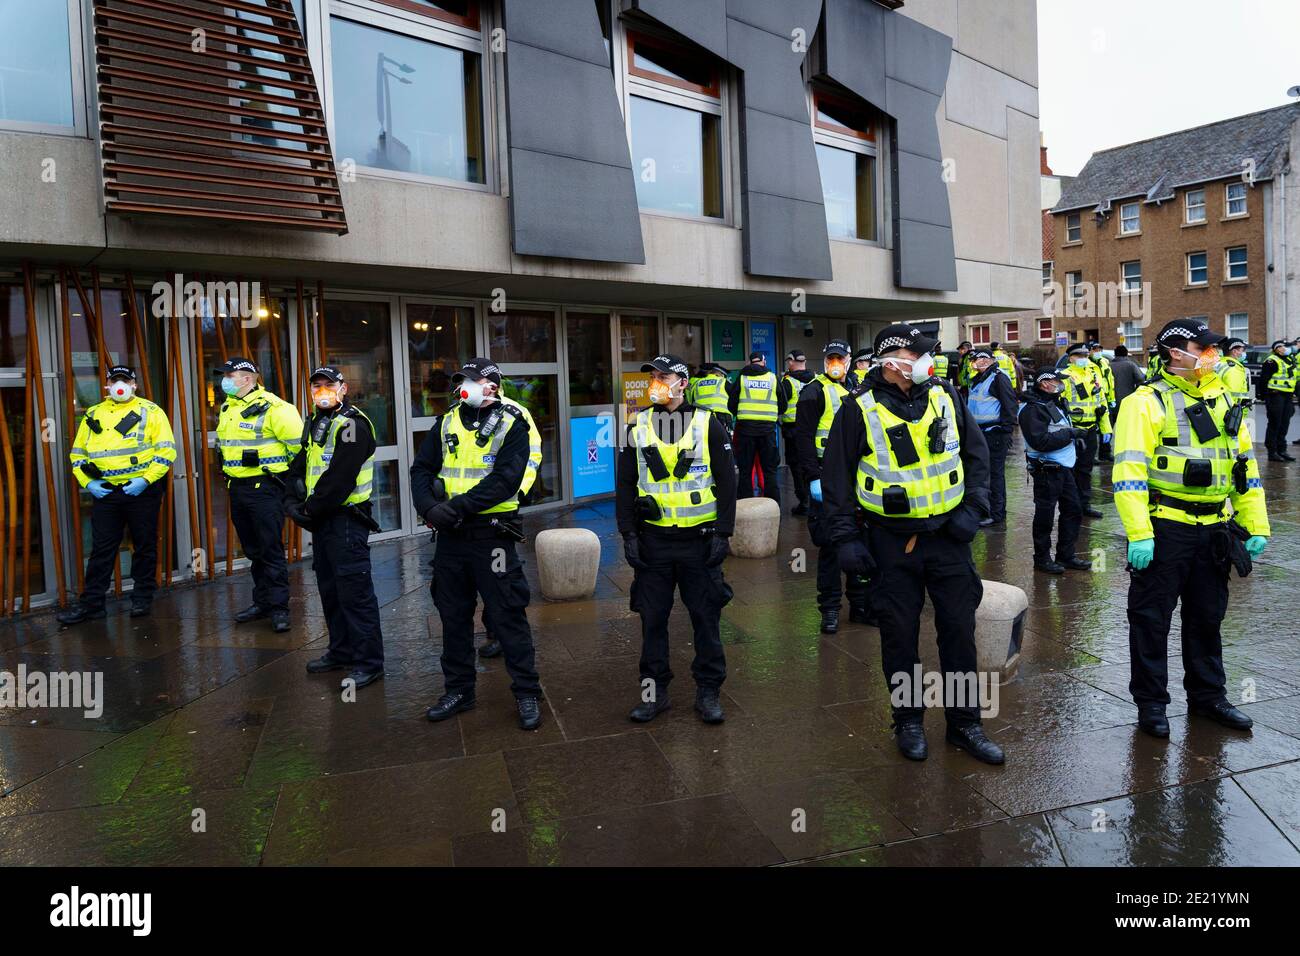 Edimburgo, Escocia, Reino Unido. 11 de enero de 2021. Un manifestante detenido en escenas violentas en una manifestación contra el bloqueo en el Parlamento escocés en Edimburgo hoy. Varios manifestantes participaron, pero una fuerte y agresiva presencia policial impidió la manifestación y planeó la marcha a Bute House. Durante el cierre nacional de Covid-19, tales protestas son ilegales y la policía aconsejó a la gente que no asistiera a la manifestación. Iain Masterton/Alamy Live News Foto de stock